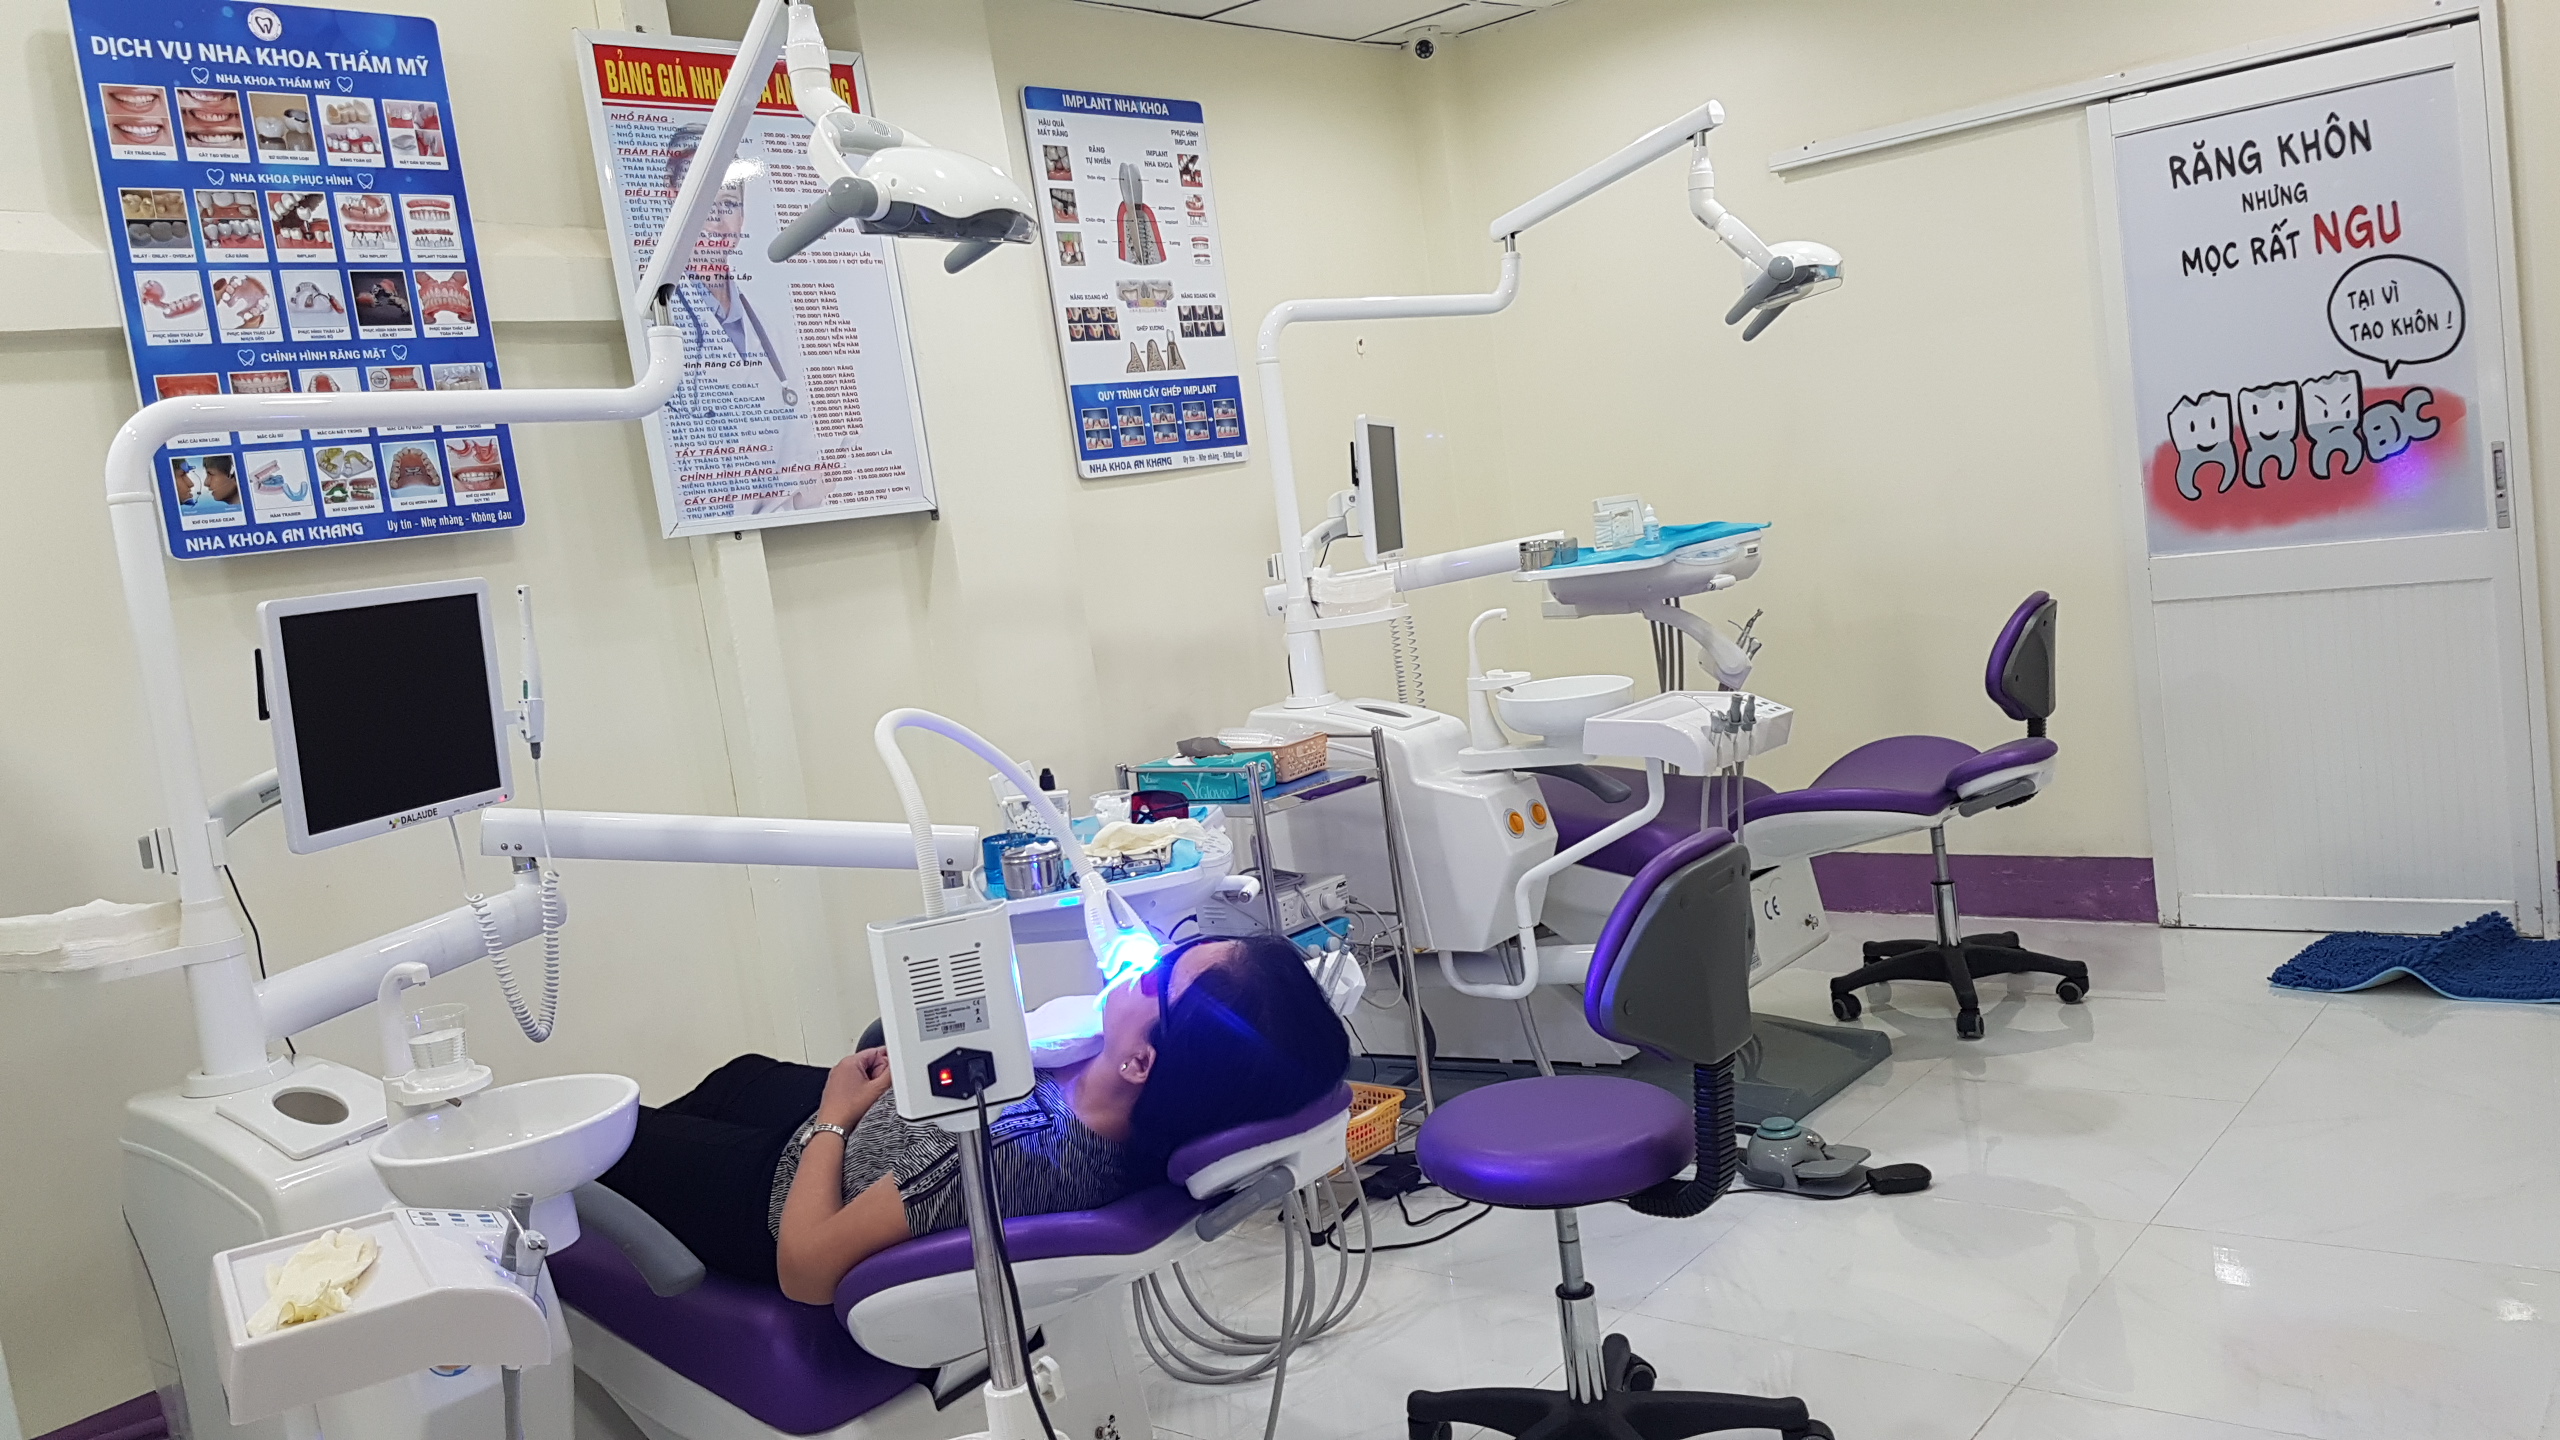 Nha khoa An Khang cung cấp các dịch vụ chuyên về răng thẩm mỹ